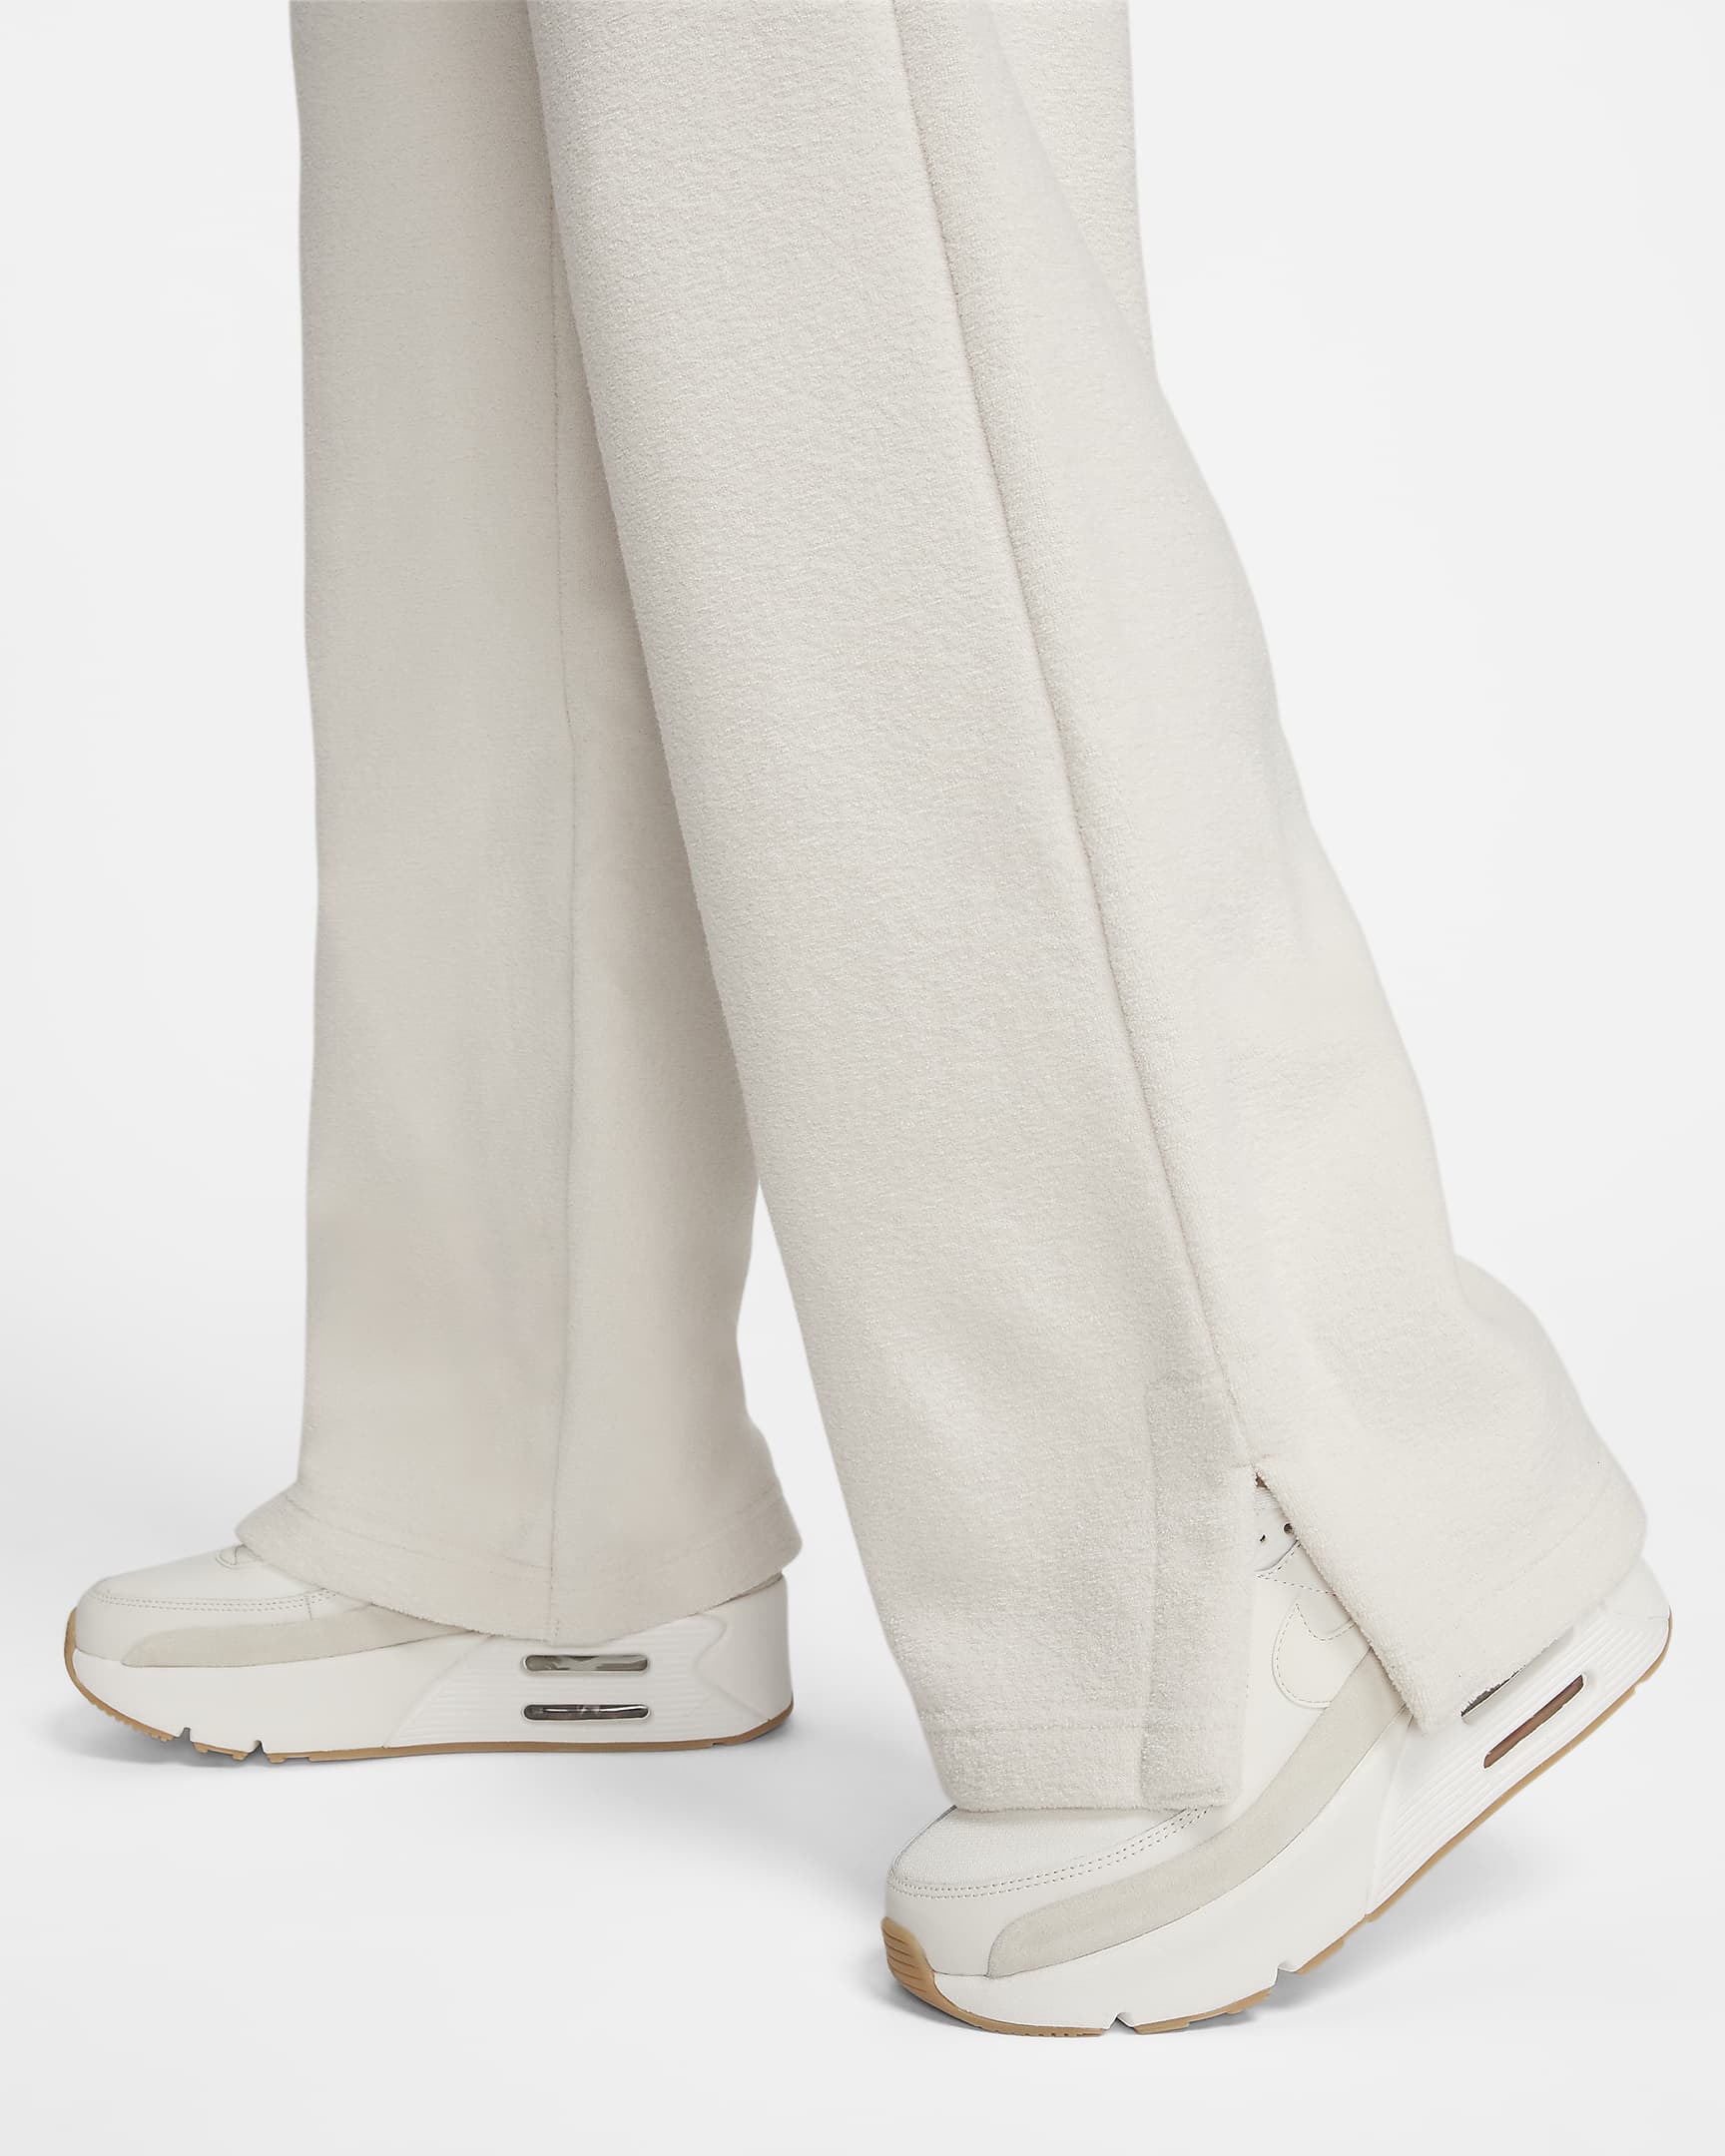 Pantalon ample à taille haute en tissu Fleece confortable Nike Sportswear Phoenix Plush pour femme - Light Orewood Brown/Sail